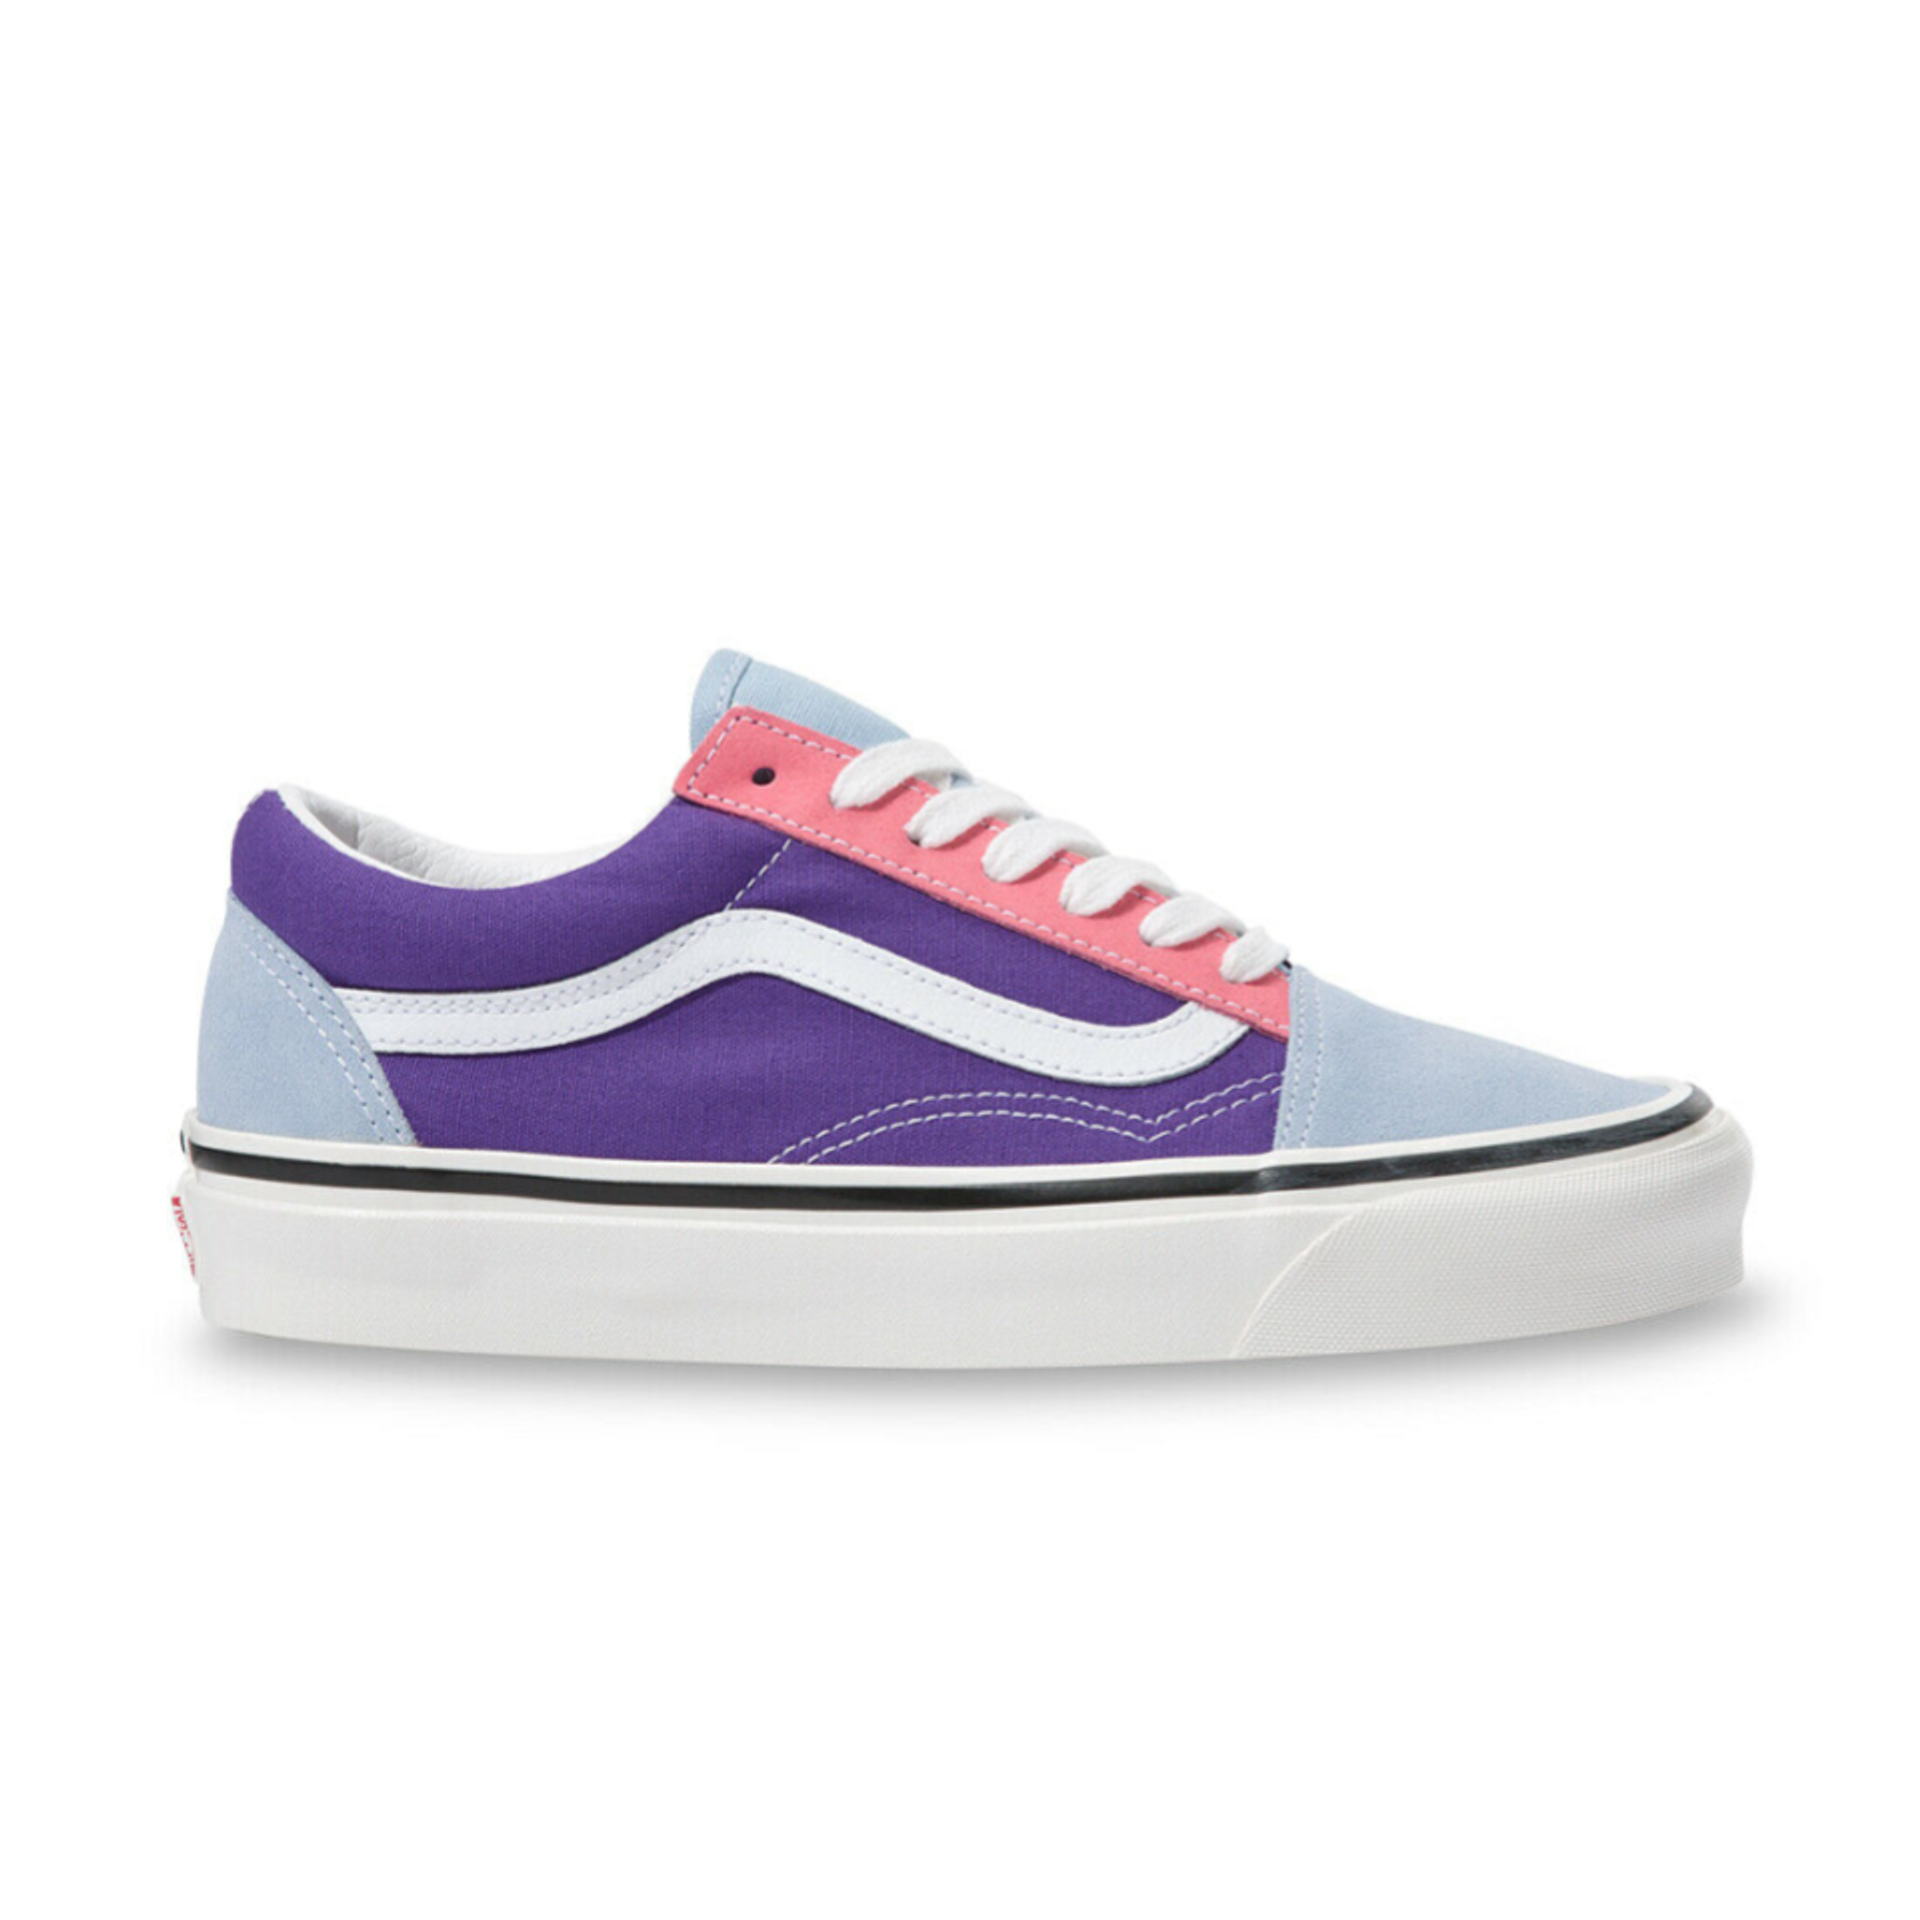 Vans Anaheim Factory Old Skool 36 Dx Shoes Og Light Blue/Og Purple/Og Pink